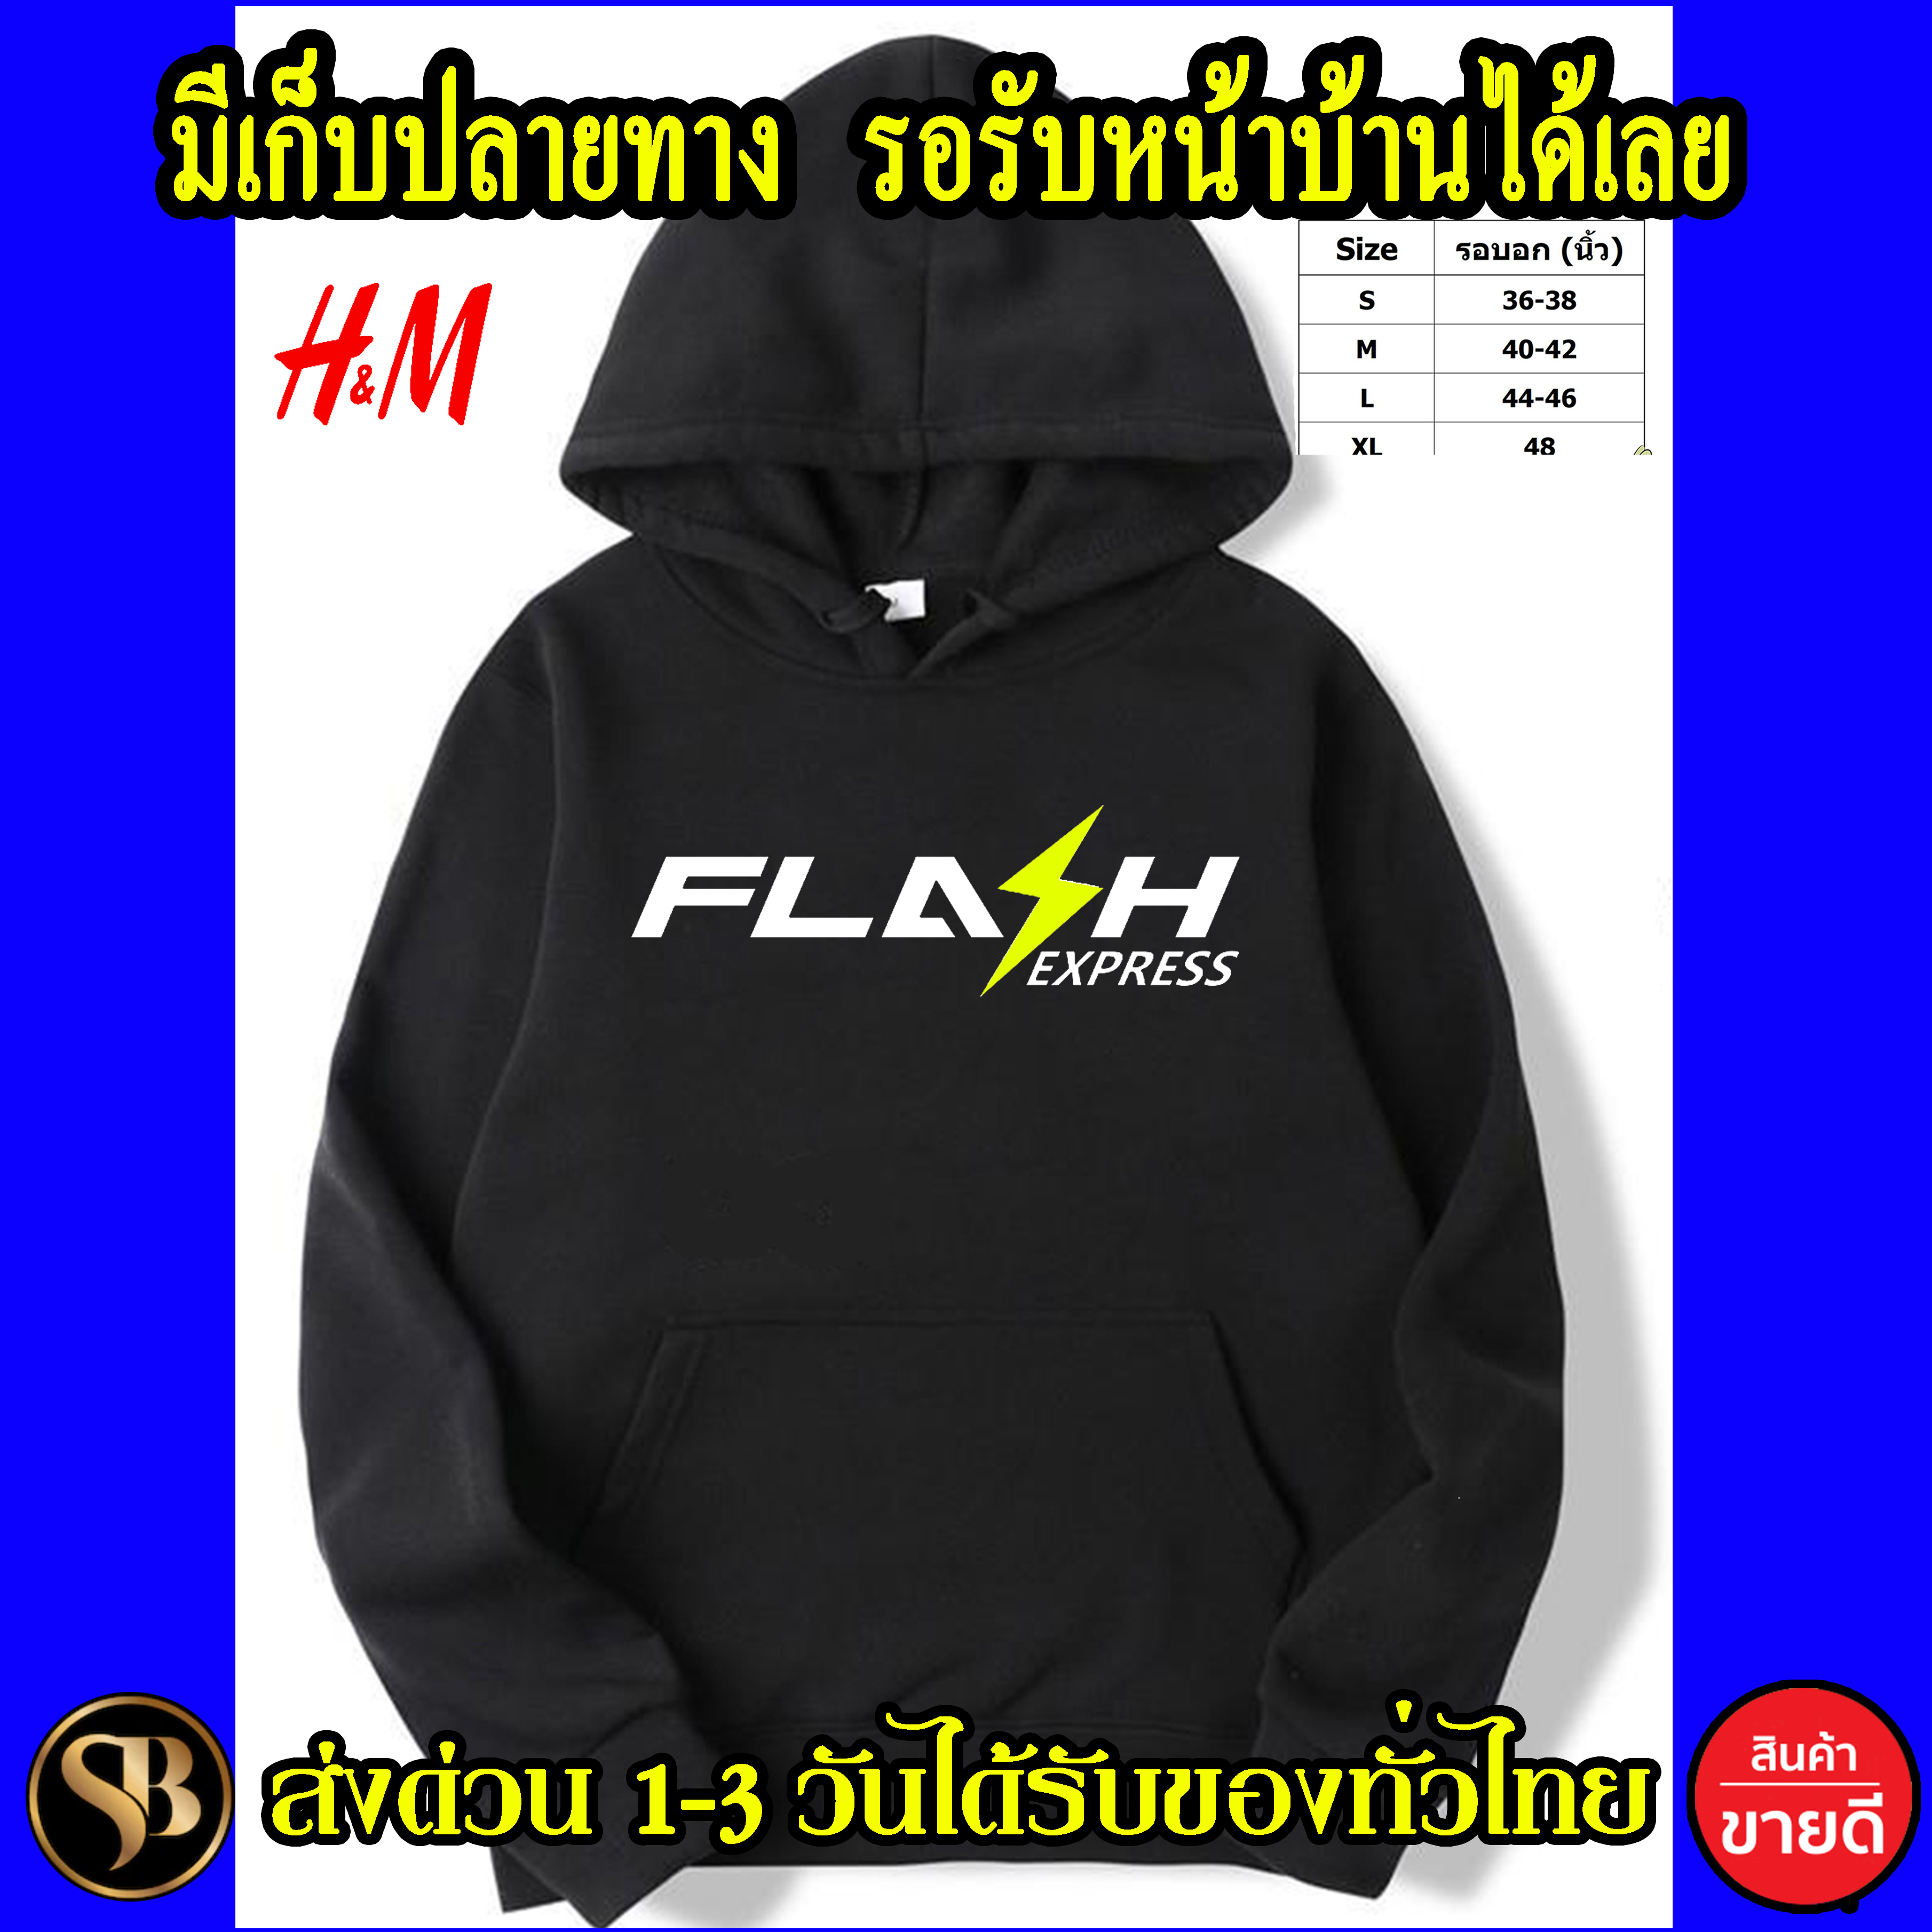 FLASH เสื้อฮู้ด Flash เสื้อกันหนาว แฟลช งาน H&M โลโก้สีสด HOODIE แบบสวม ซิป สกรีนแบบเฟล็ก PU สวยสดไม่แตกไม่ลอก ส่งด่วนทั่วไทย